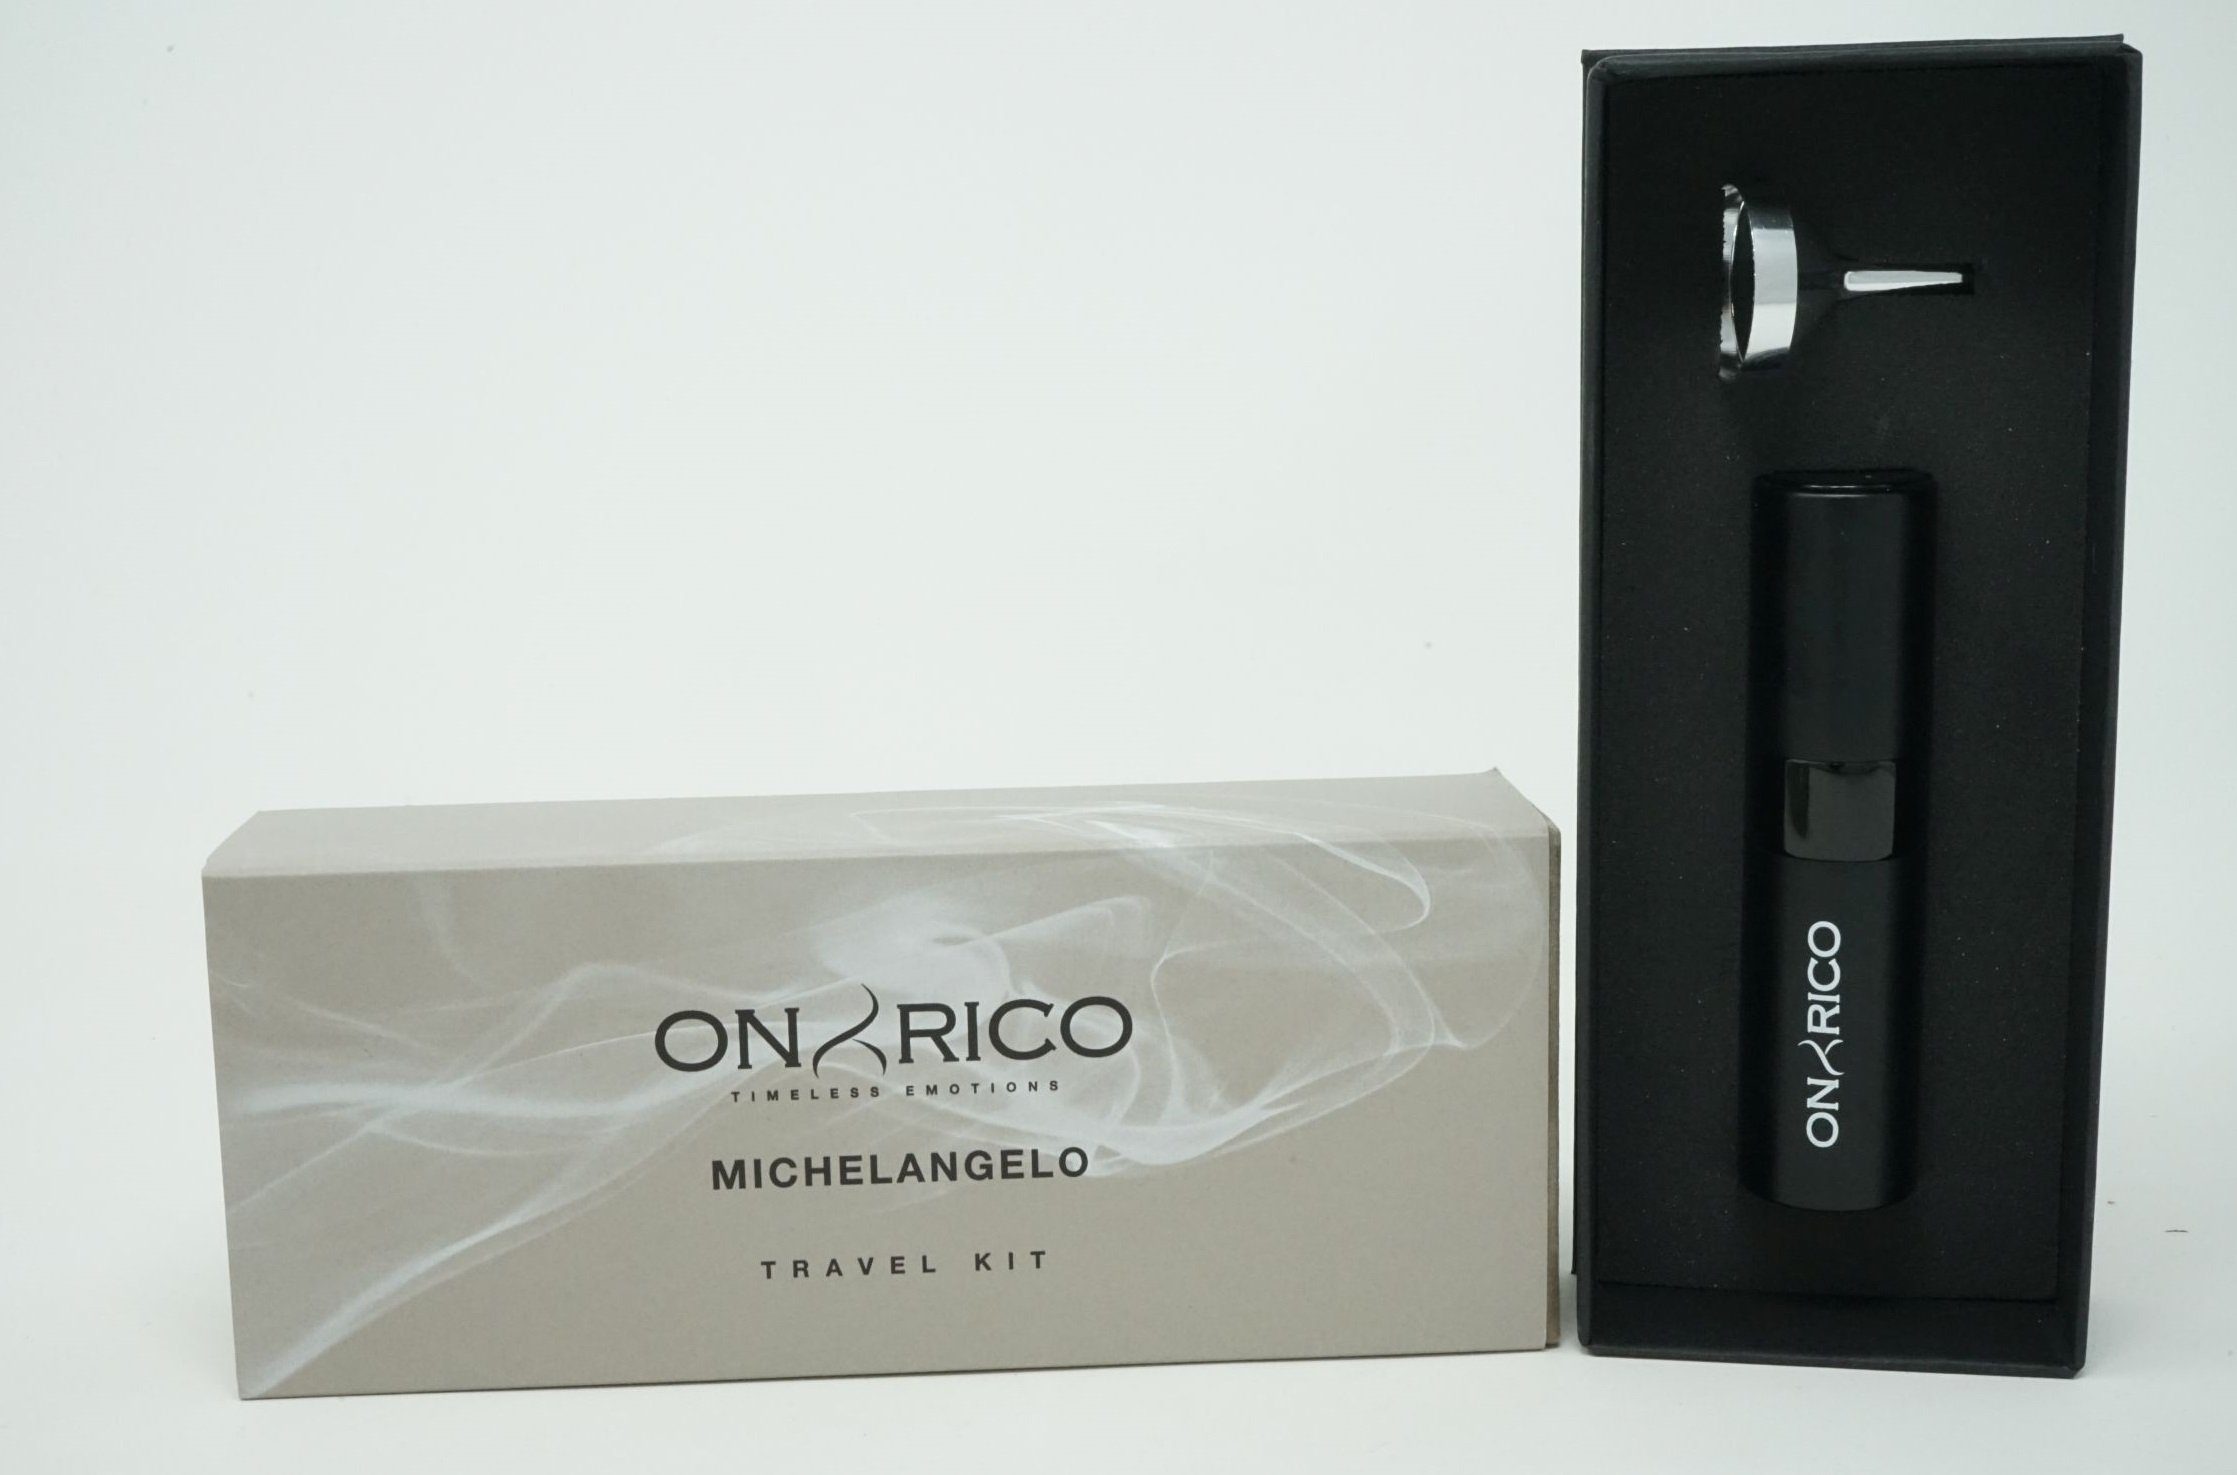 LAMBORGHINI Eau de Parfum Onyrico Timeless Emotions Travel Kit Parfum 8 ml Michelangelo